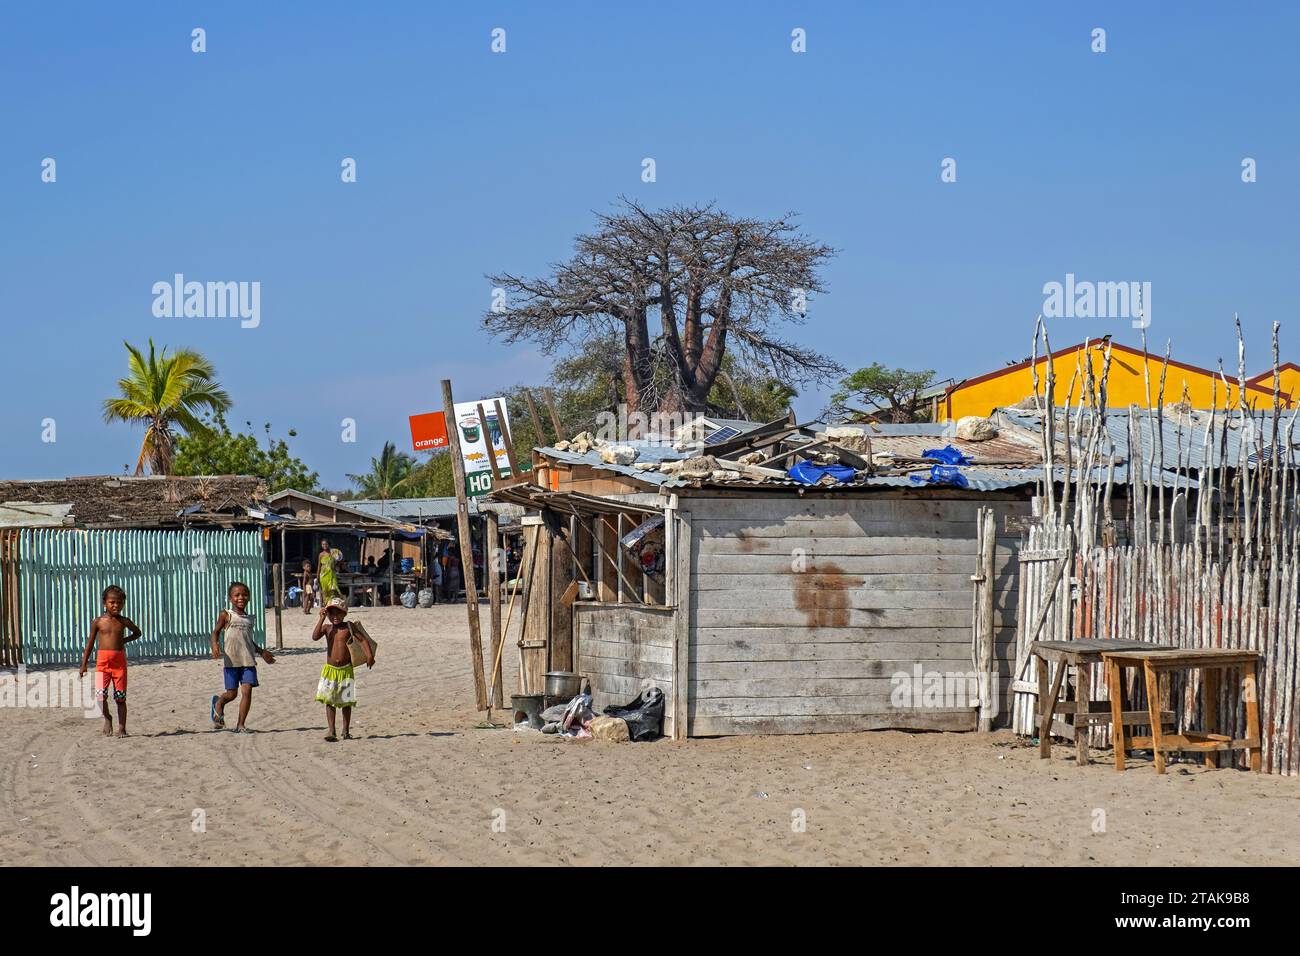 Streetscene montrant des cabanes / maisons en bois et des enfants jouant dans le village côtier Belo sur Mer, district de Morondava, région de Menabe, Madagascar Banque D'Images